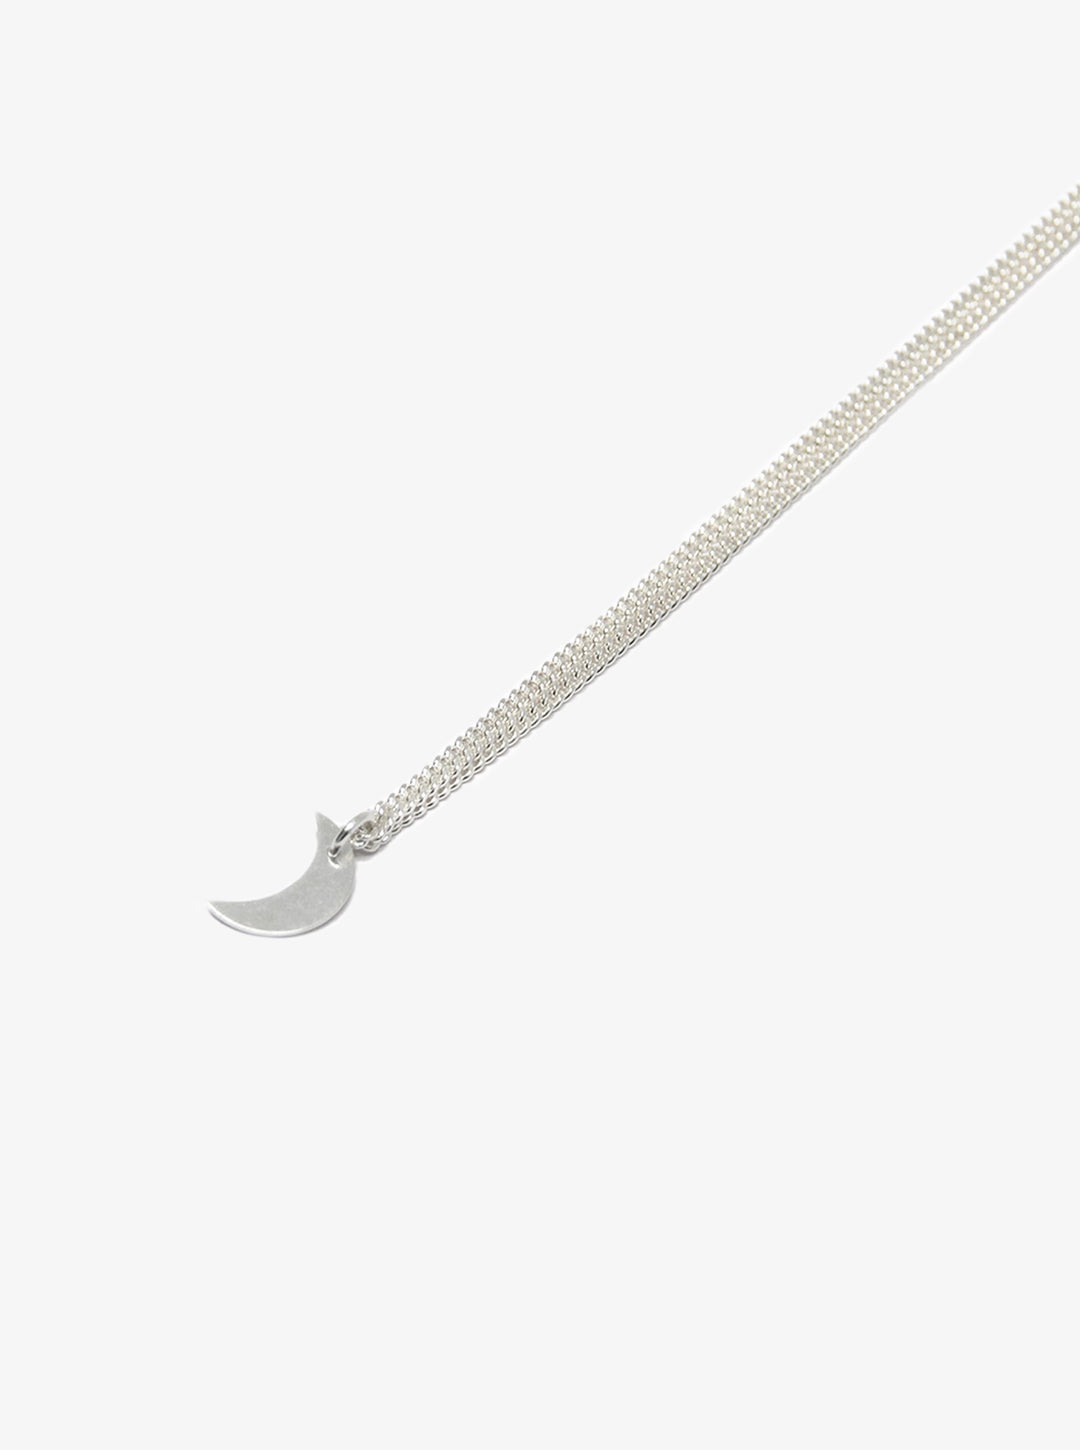 llayers jewelry small moon quarter silver pendant minimal collier avec petit quartier de lune en argent made in paris